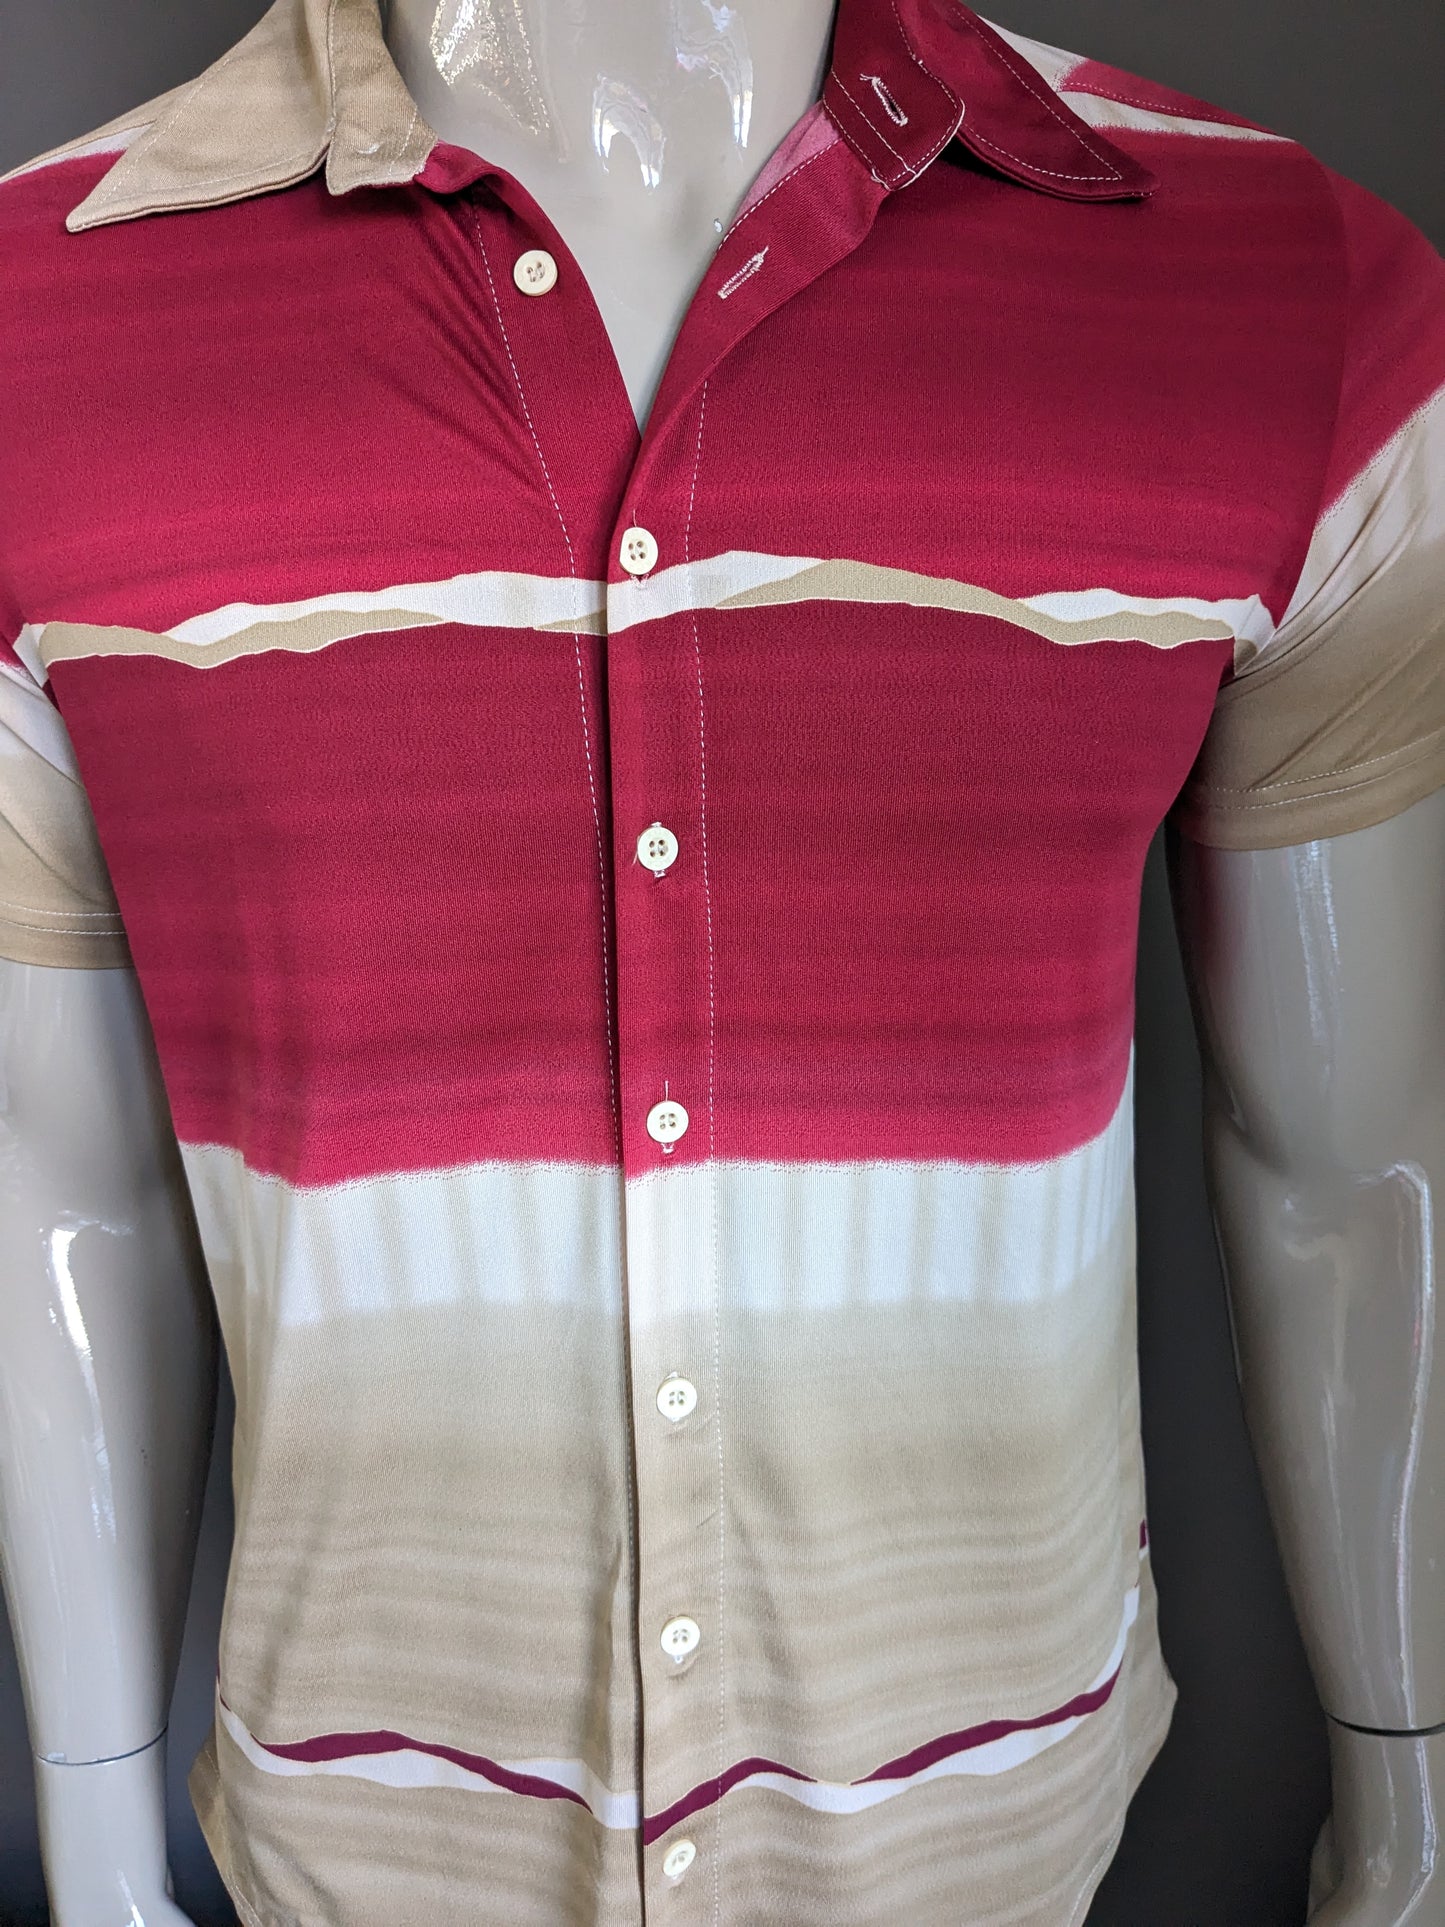 Shirt CSC vintage manica corta. Colore rosso beige marrone. Taglia L. Allungamento.